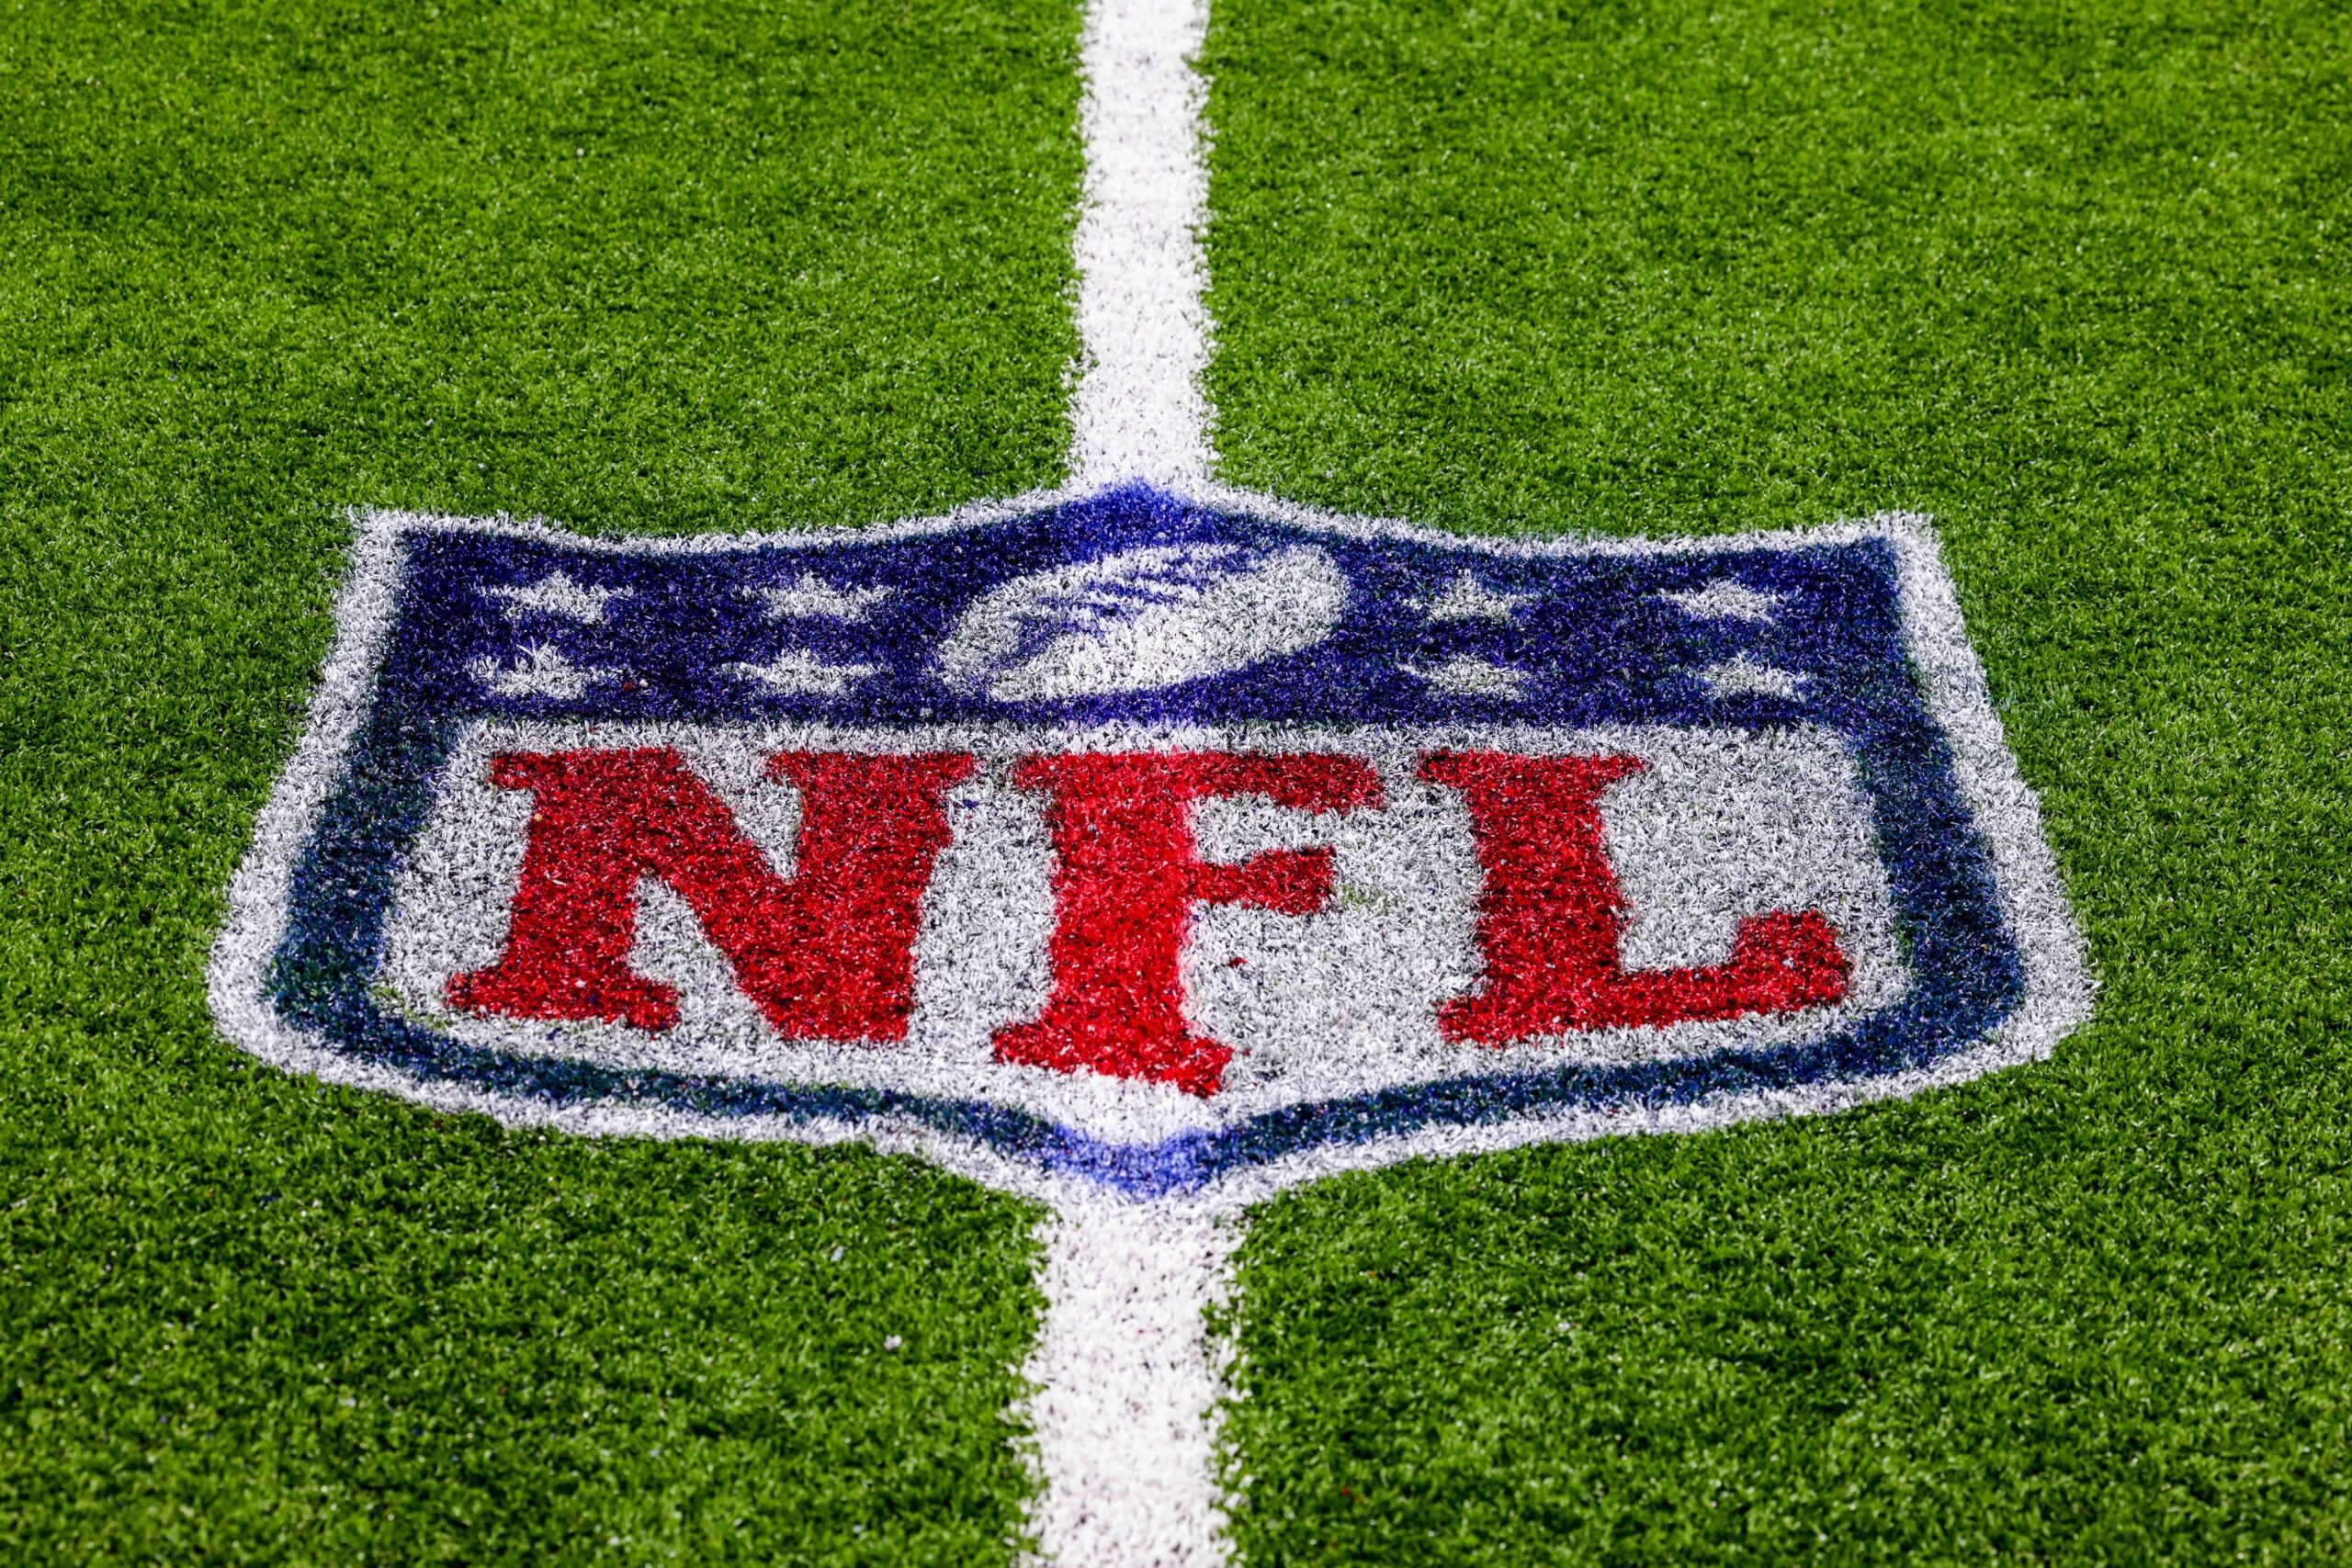 2022 NFL Preseason Week 3: Schedule, game storylines, players to